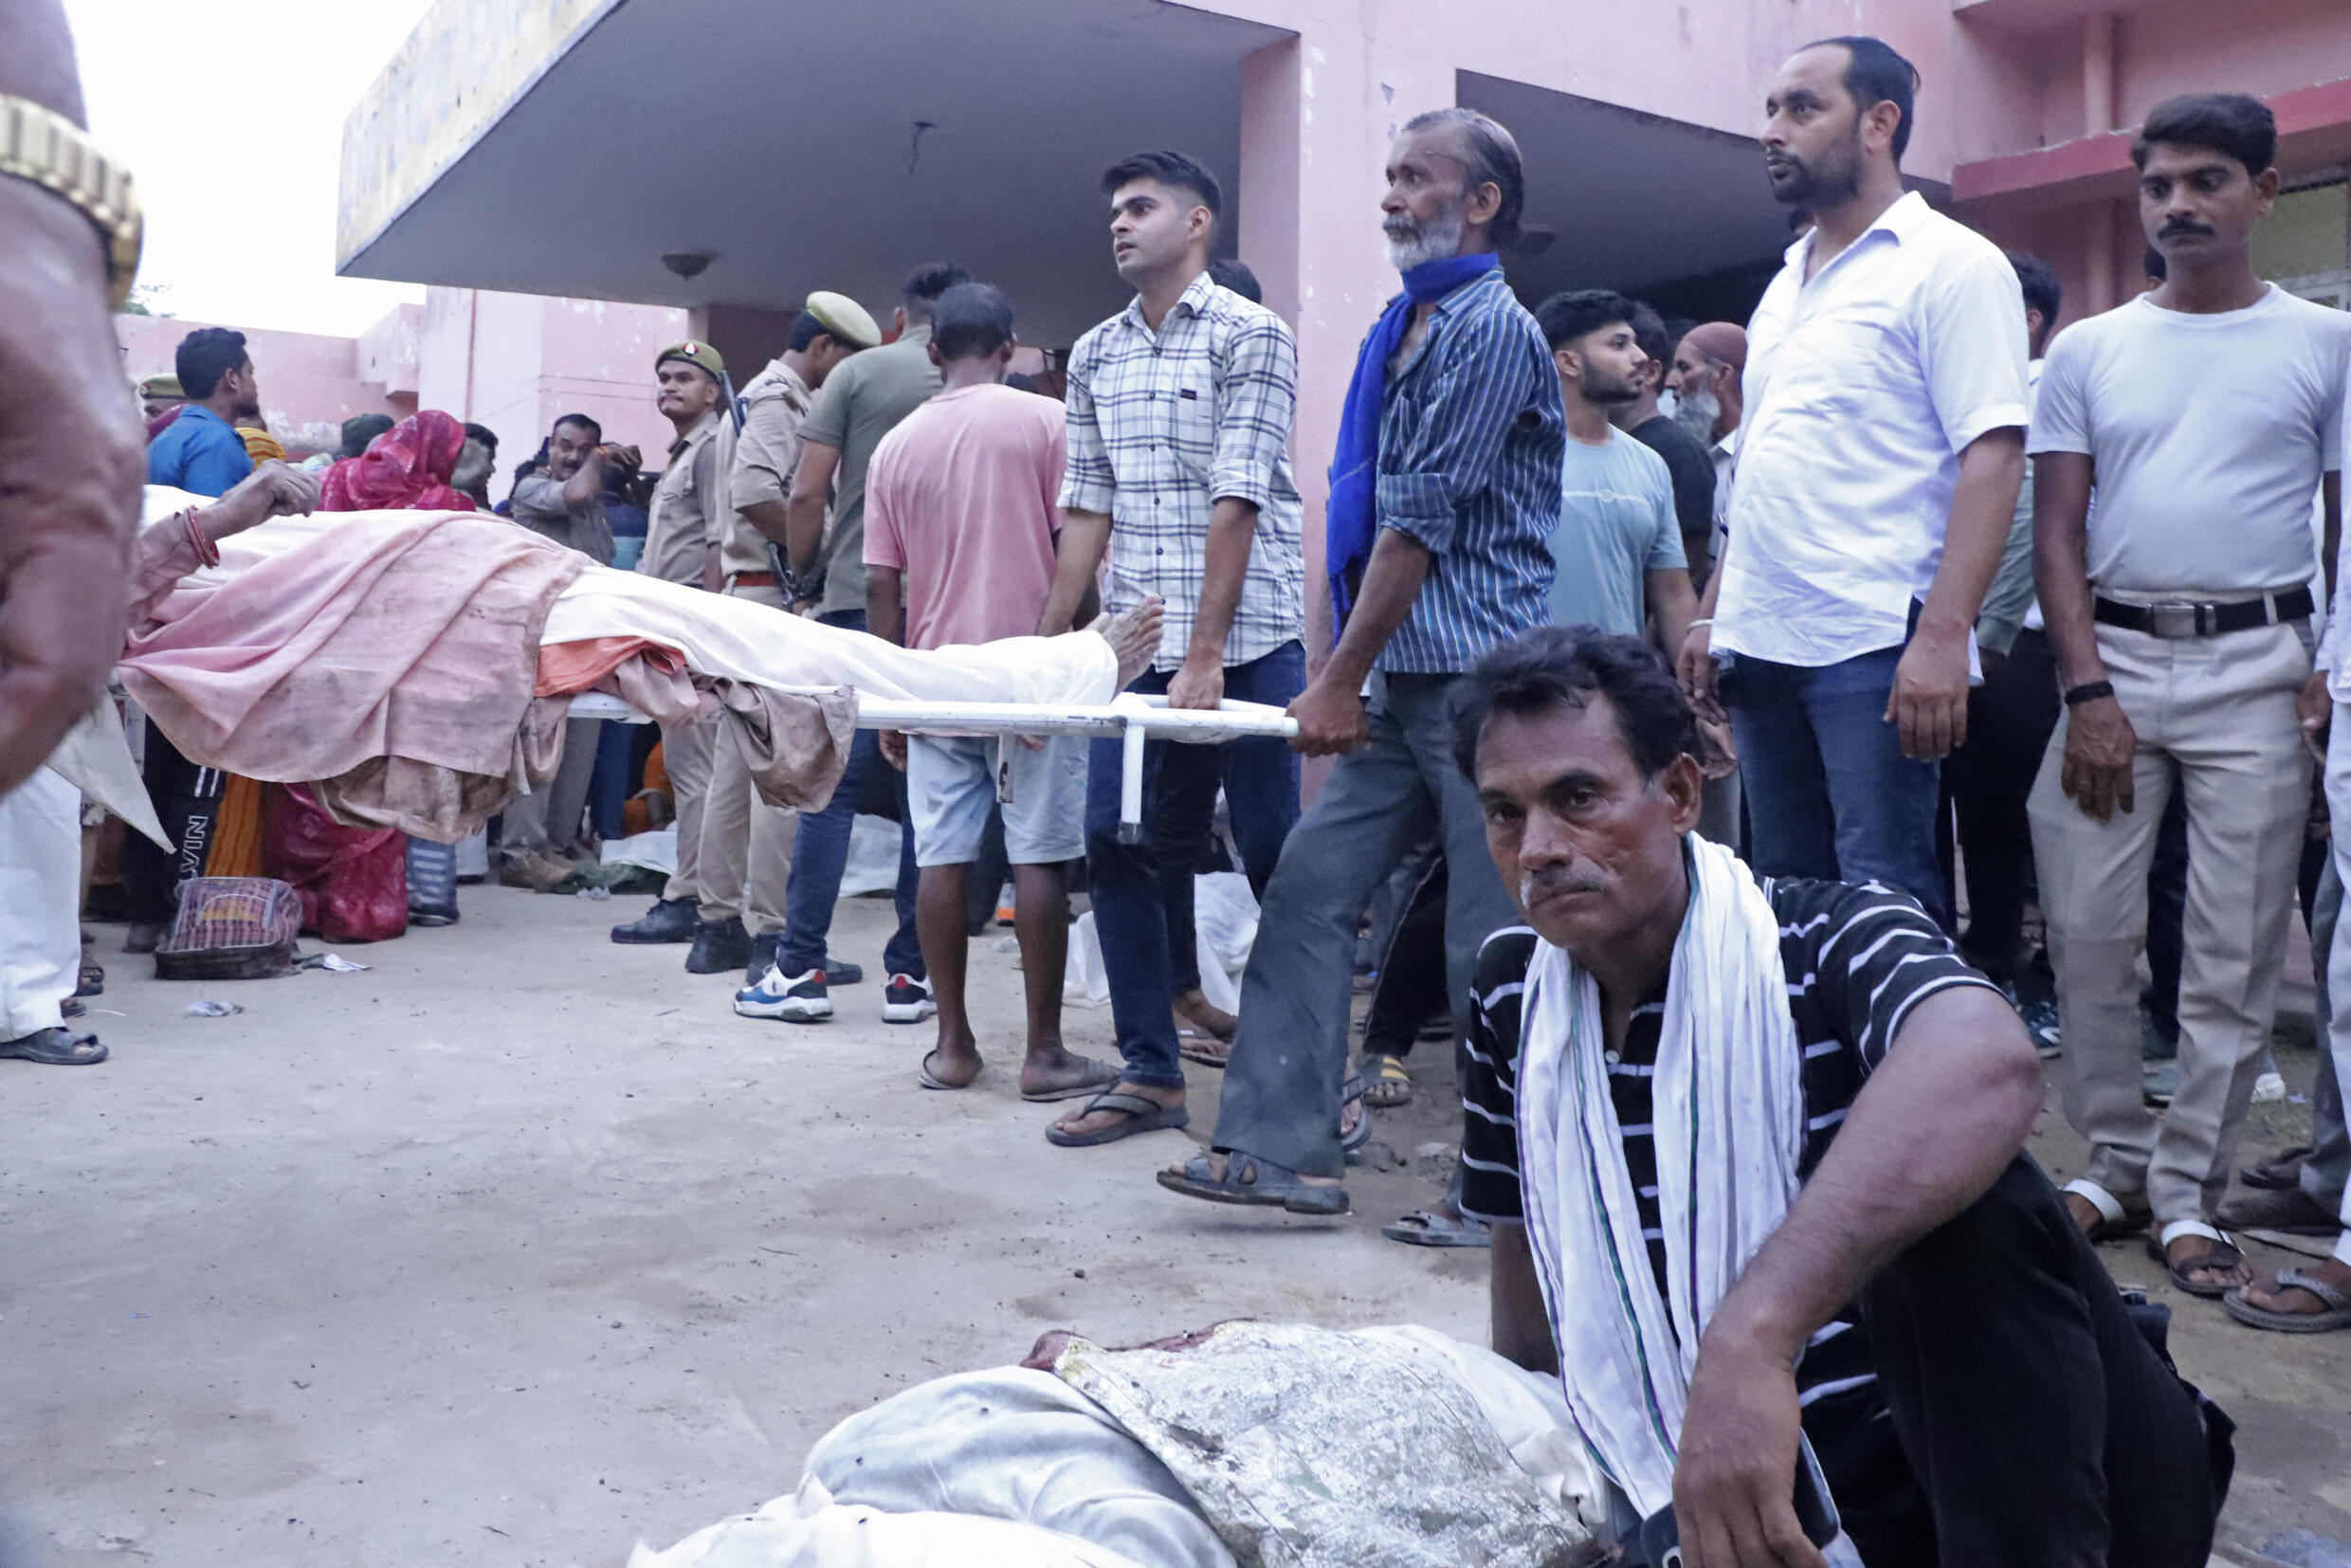 Inde : des dizaines de personnes meurent écrasées par la foule lors d'un rassemblement religieux